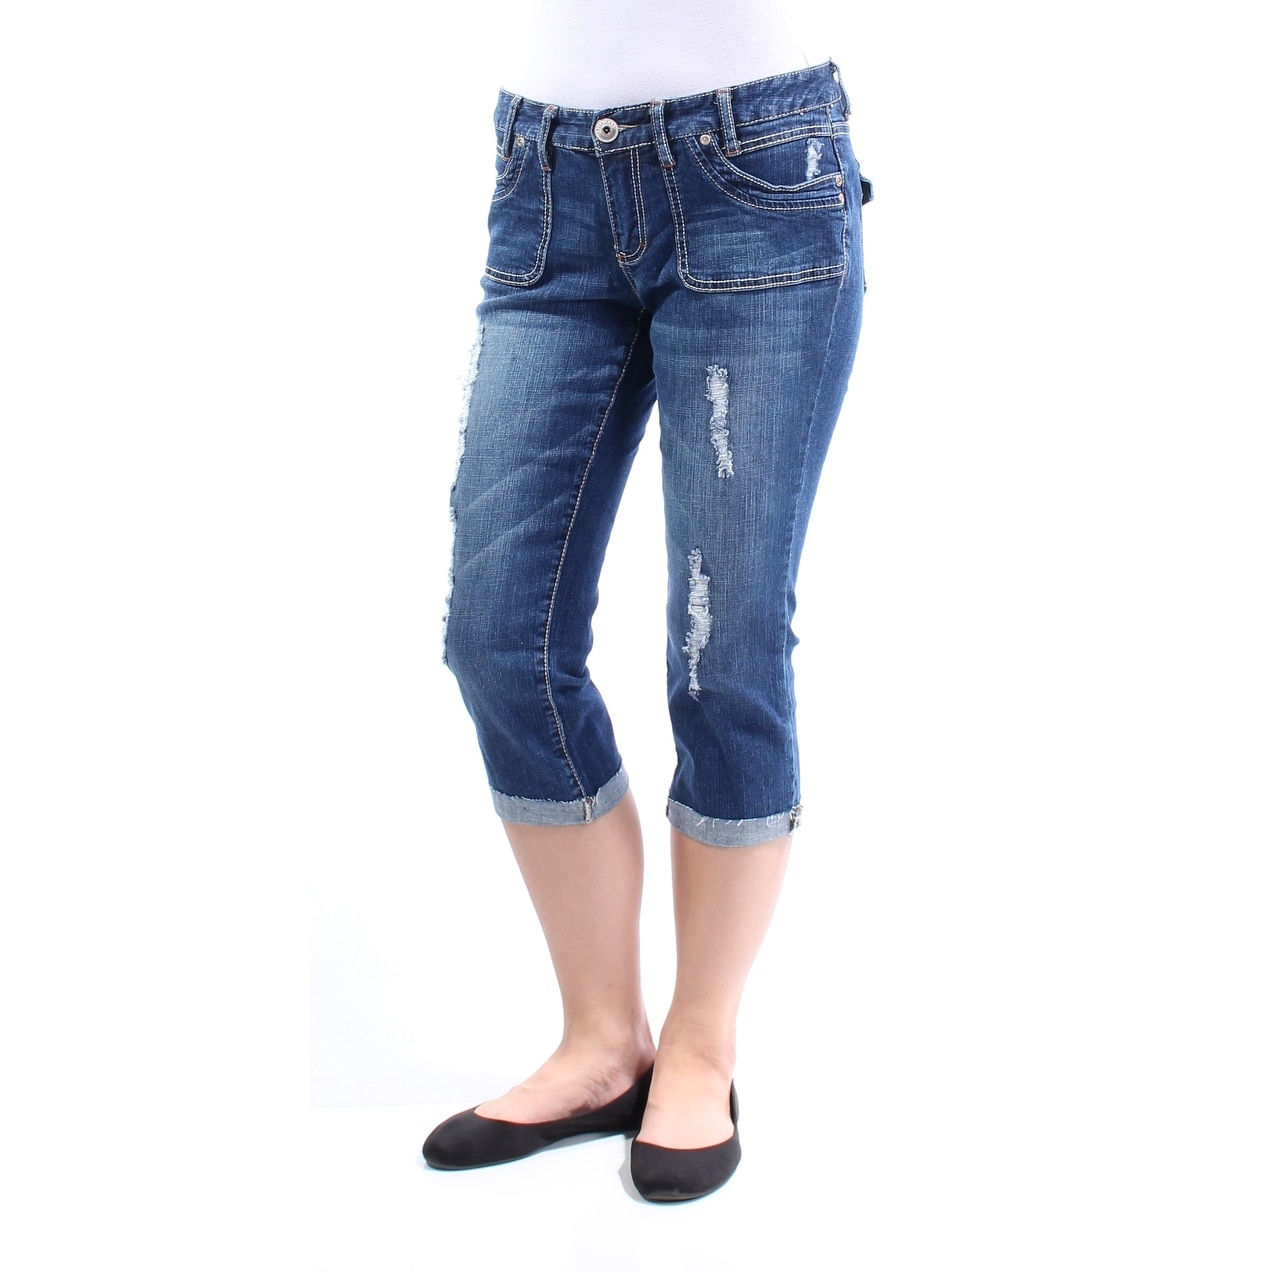 straight leg ariya jeans